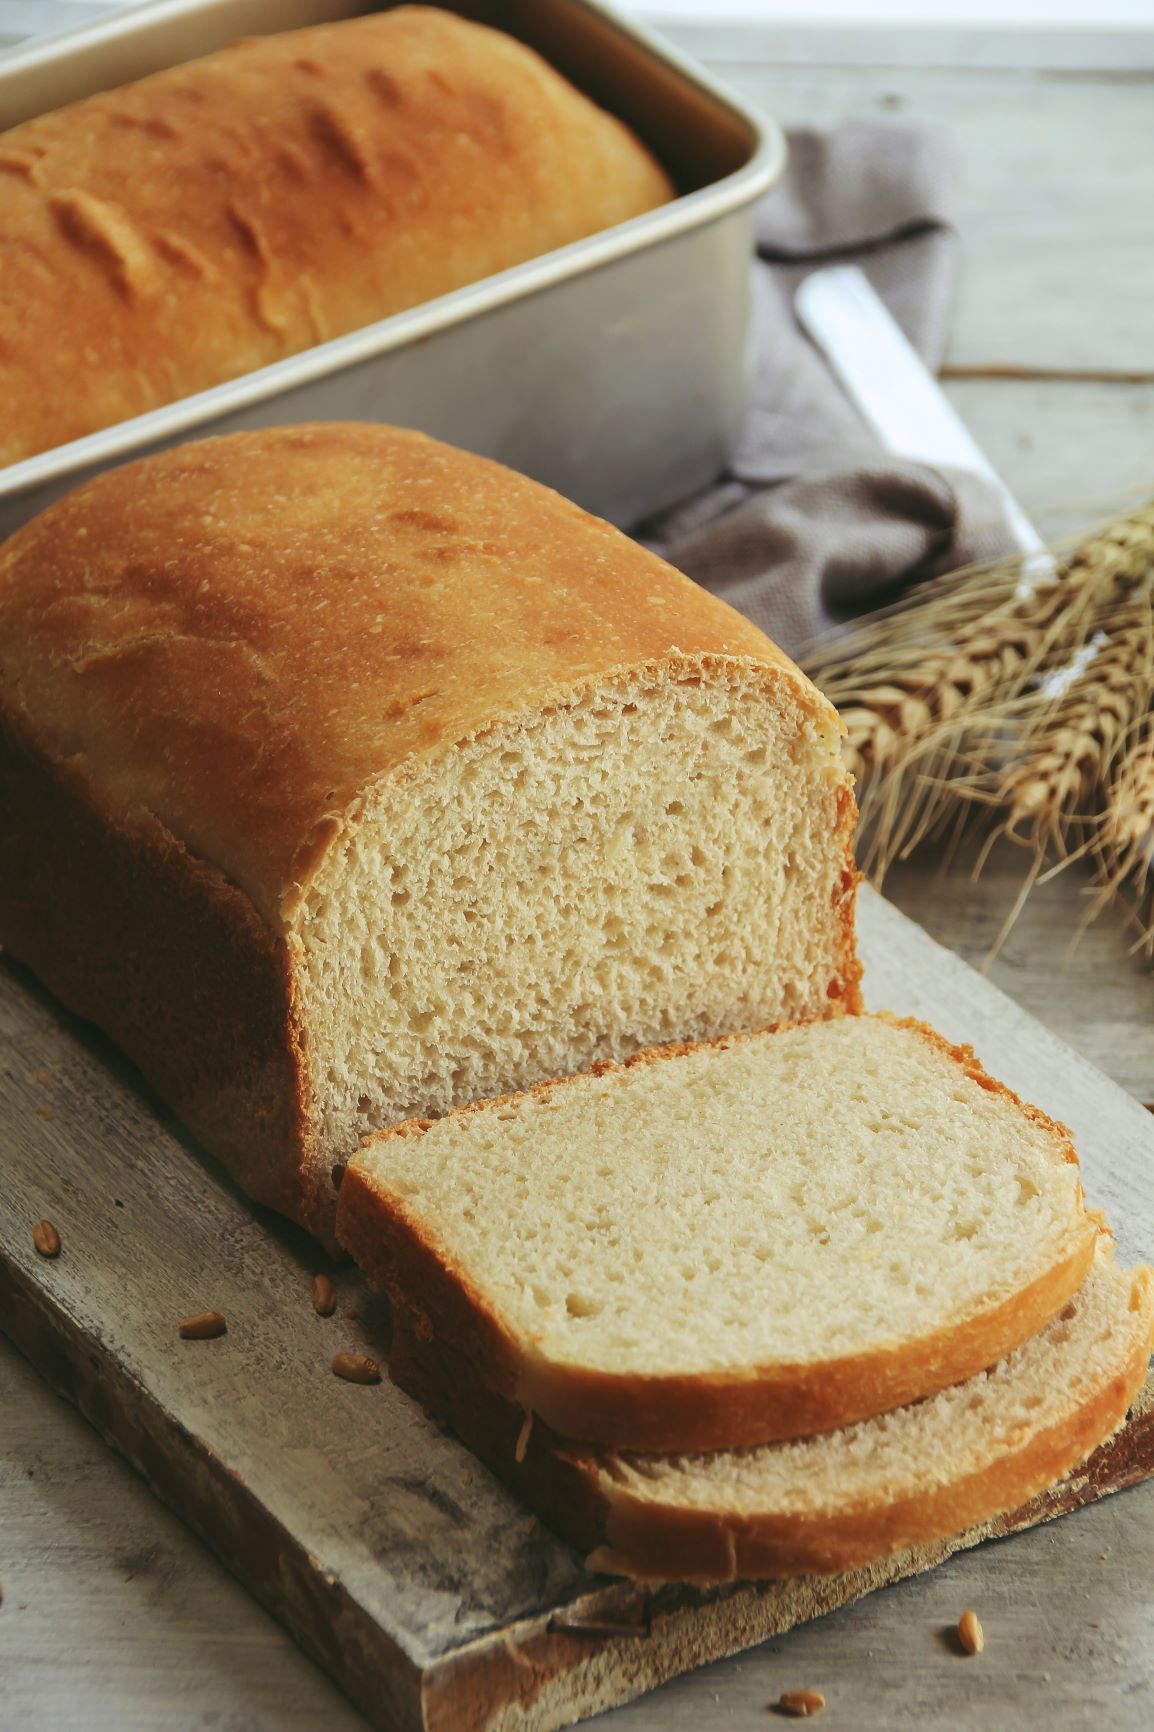 Honey-Wheat Sandwich Bread